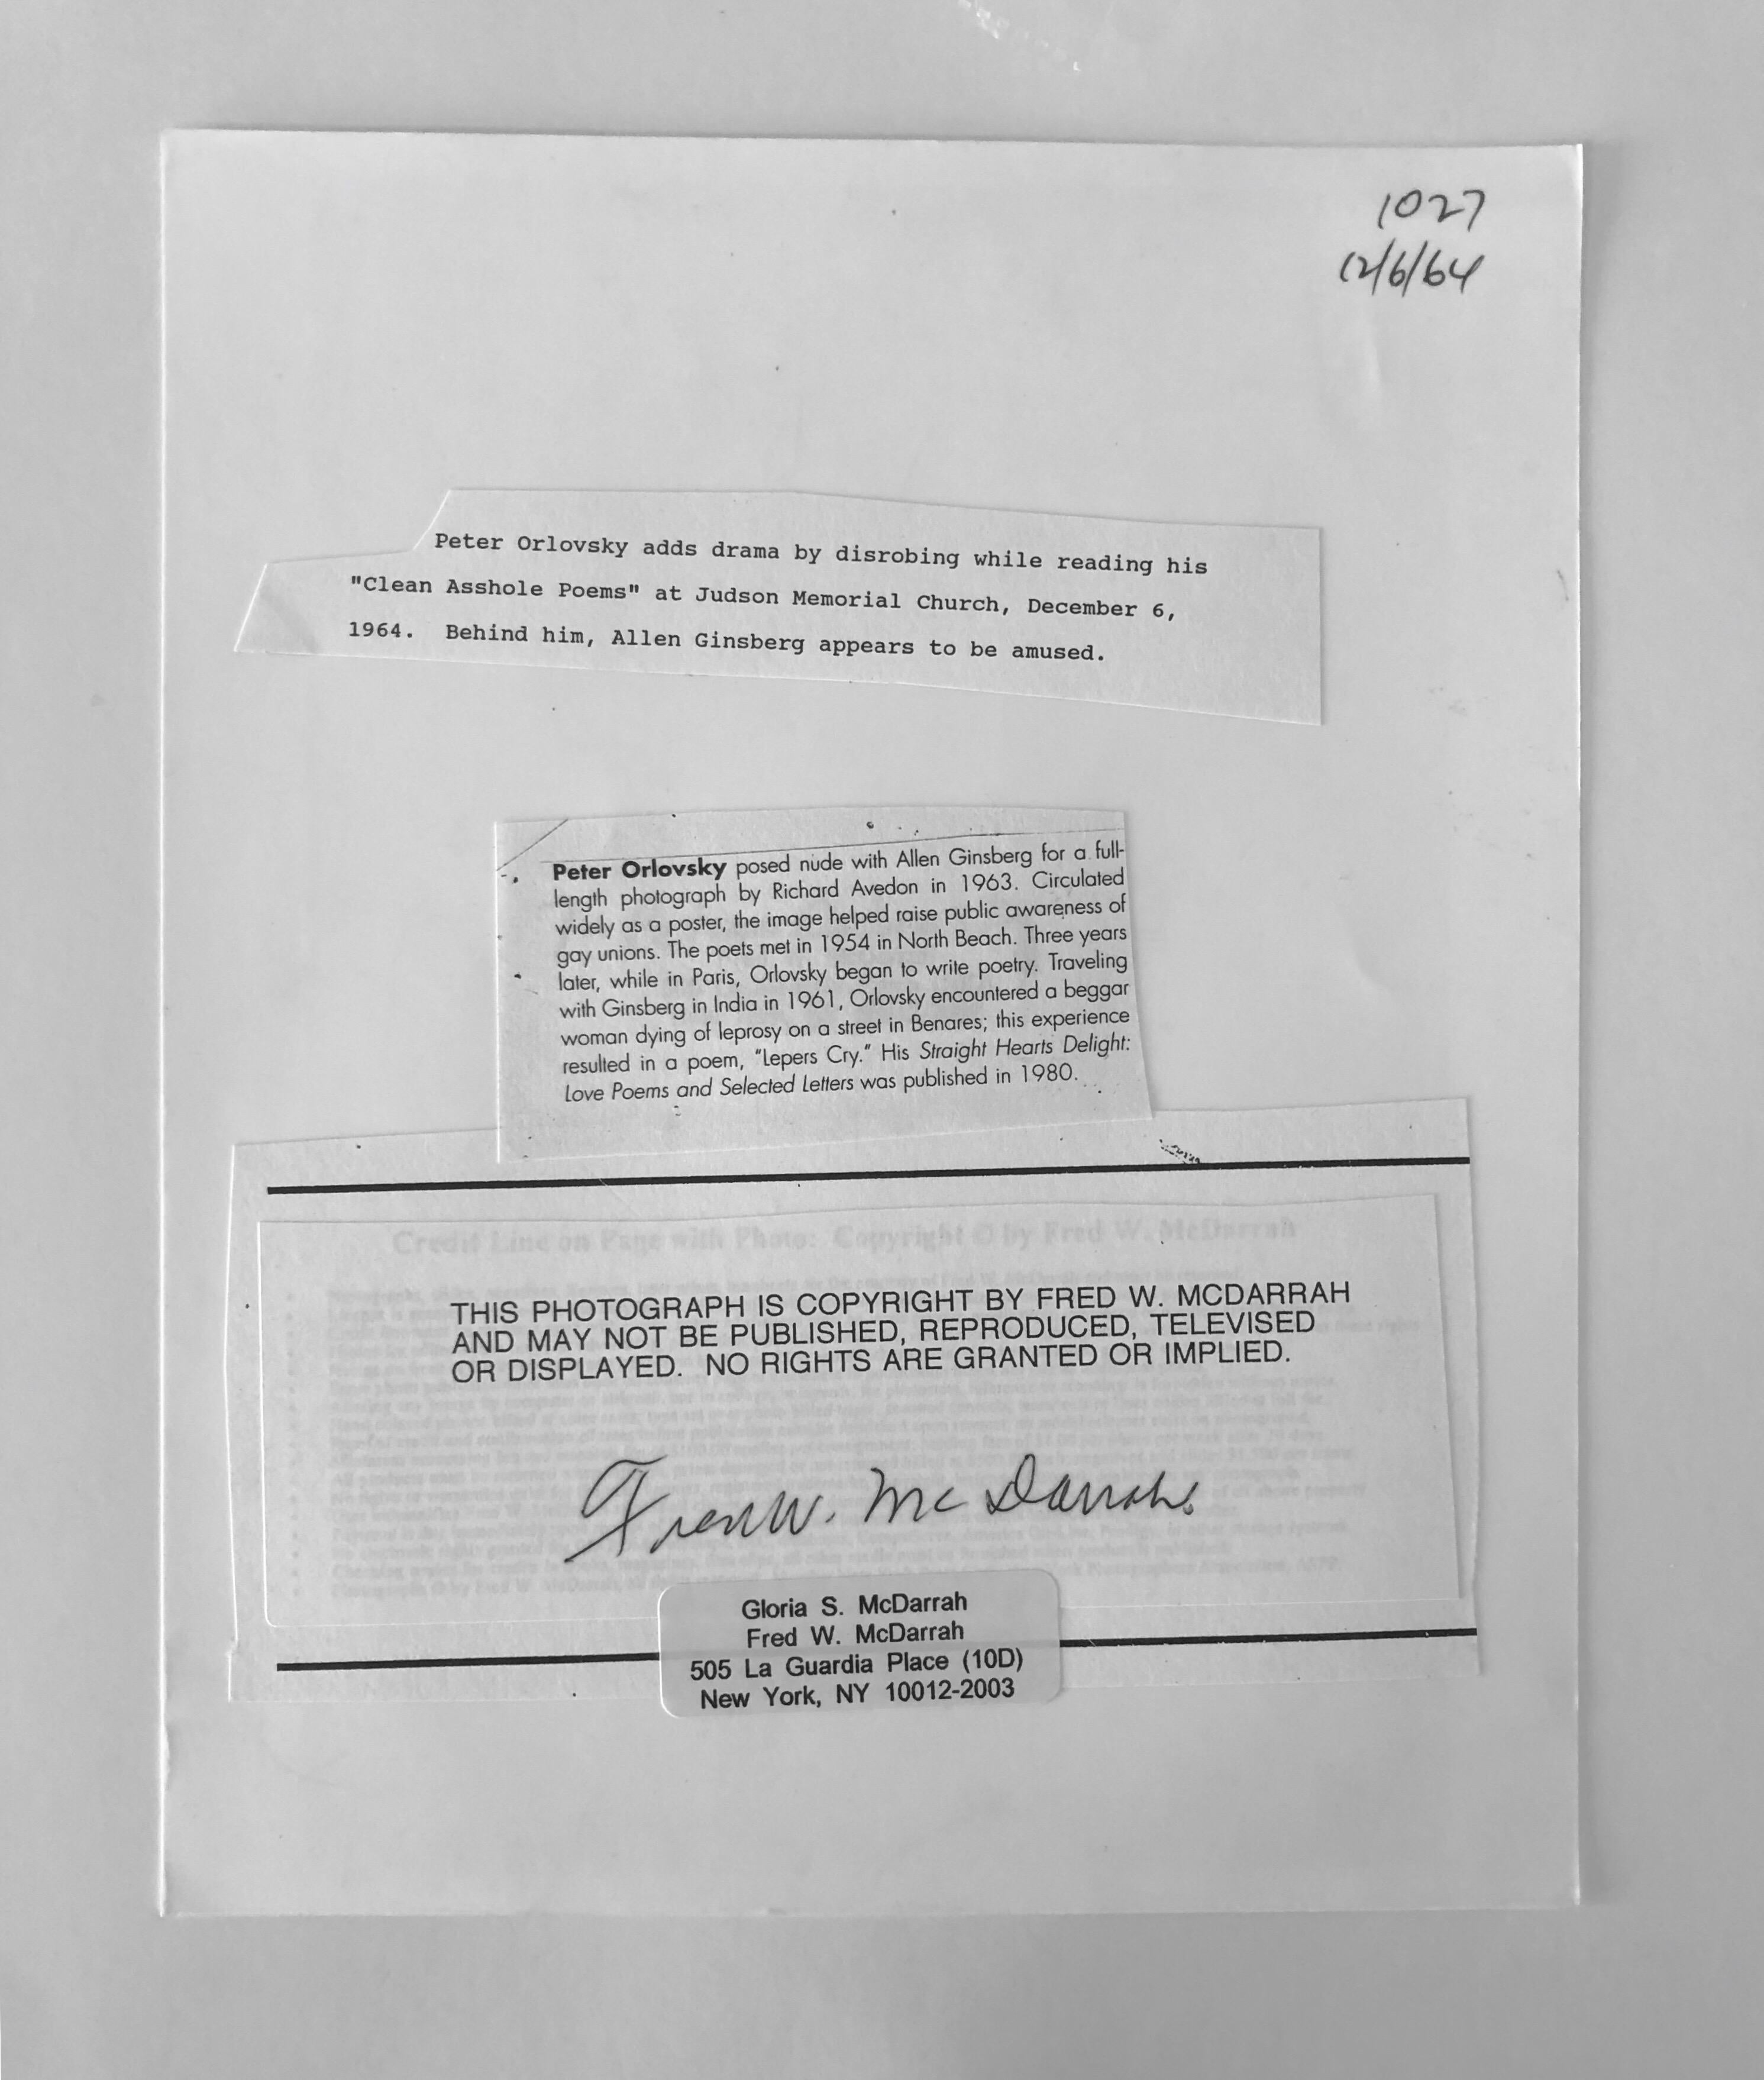 Peter Orlovsky lit un poème déshabillé à la Judson Memorial Church. Derrière lui se trouve Allen Ginsberg - 6 décembre 1964. (par Washington Square Park à Greenwich Village, New York City)
Le photographe est Fred McDarrah 

Sur une période de 50